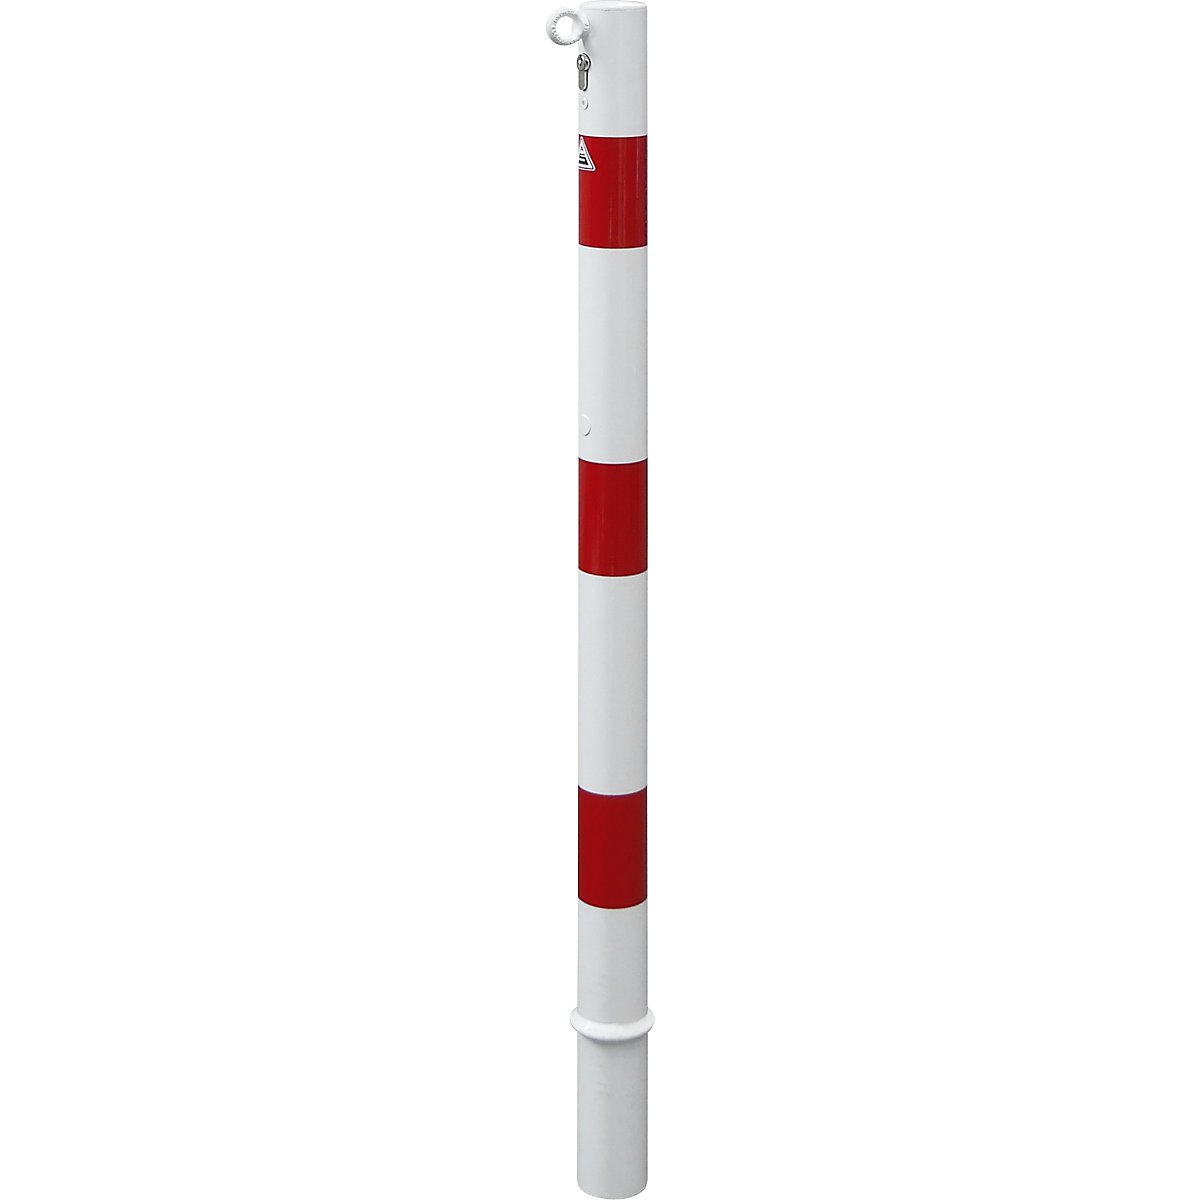 Absperrpfosten, Ø 60 mm, weiß / rot, herausnehmbar mit Profilzylinder, mit 1 Öse